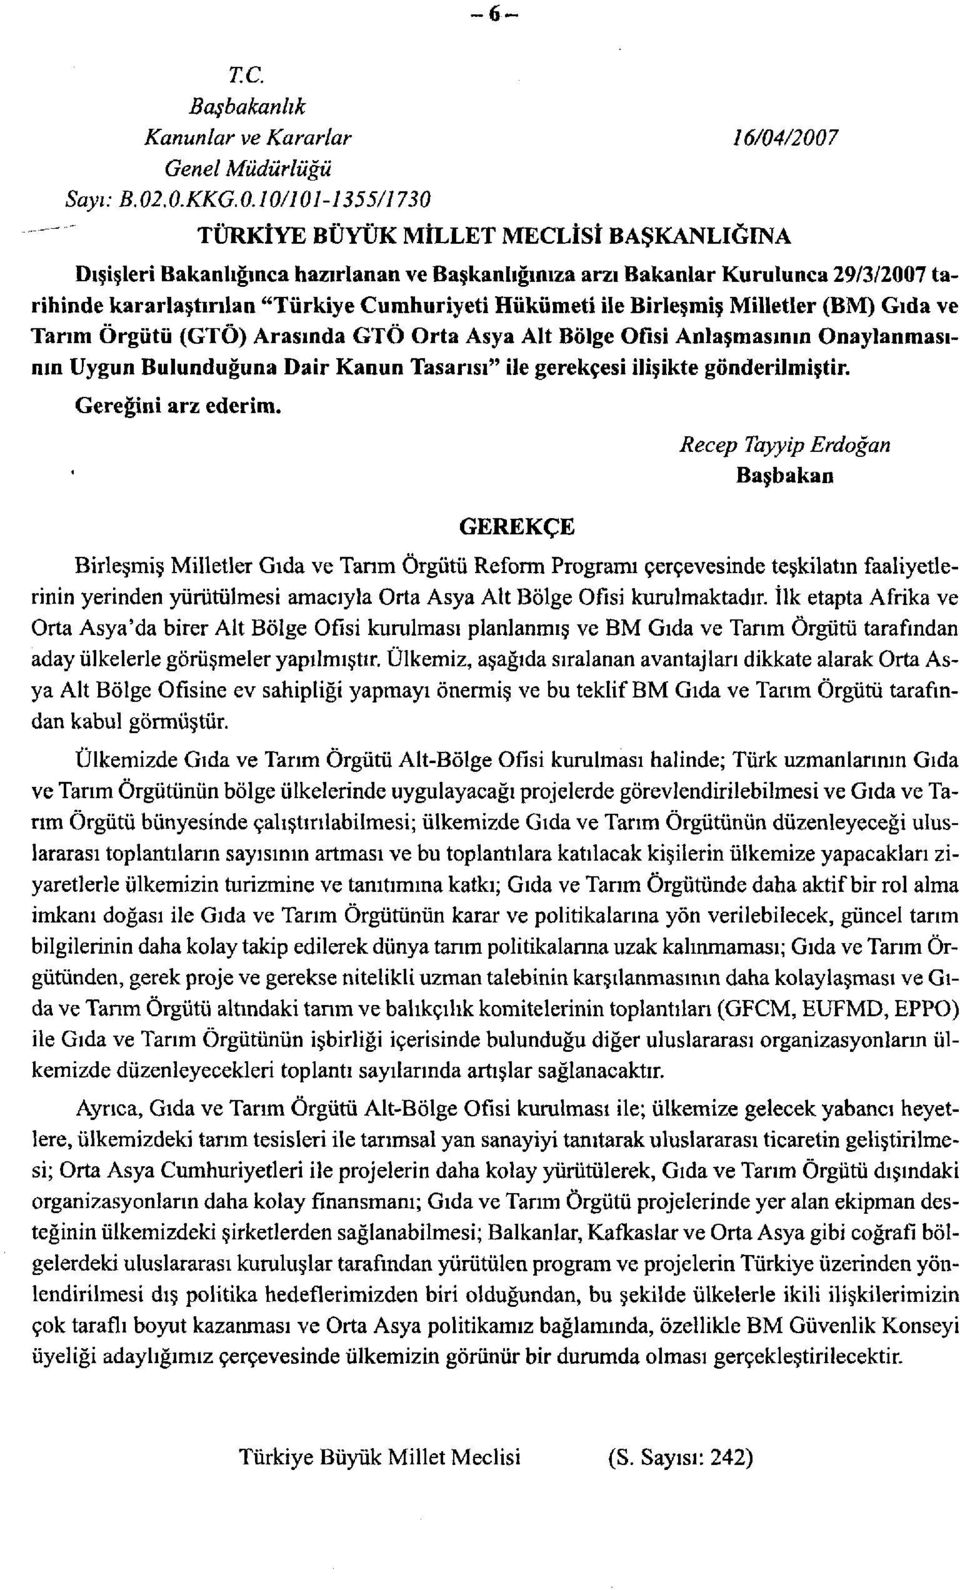 kararlaştırılan "Türkiye Cumhuriyeti Hükümeti ile Birleşmiş Milletler (BM) Gıda ve Tarım Örgütü (GTÖ) Arasında GTÖ Orta Asya Alt Bölge Ofisi Anlaşmasının Onaylanmasının Uygun Bulunduğuna Dair Kanun